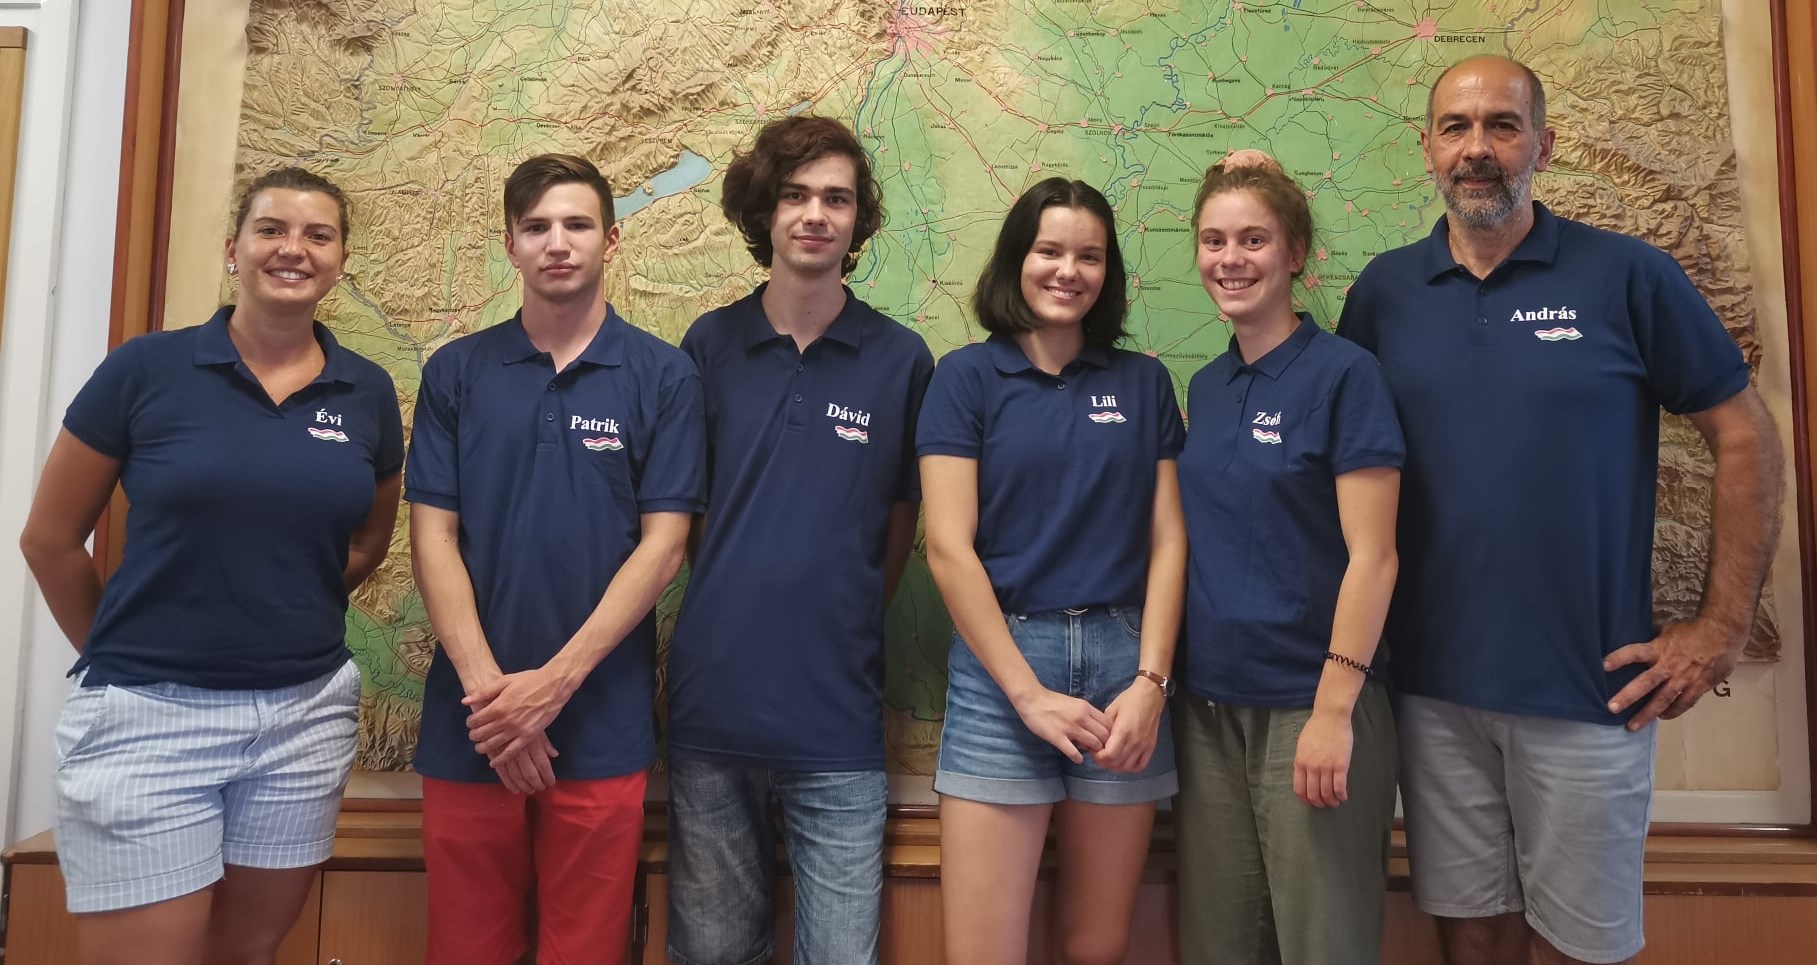 Ungarische Schüler gewinnen drei Medaillen bei der Geographie-Olympiade